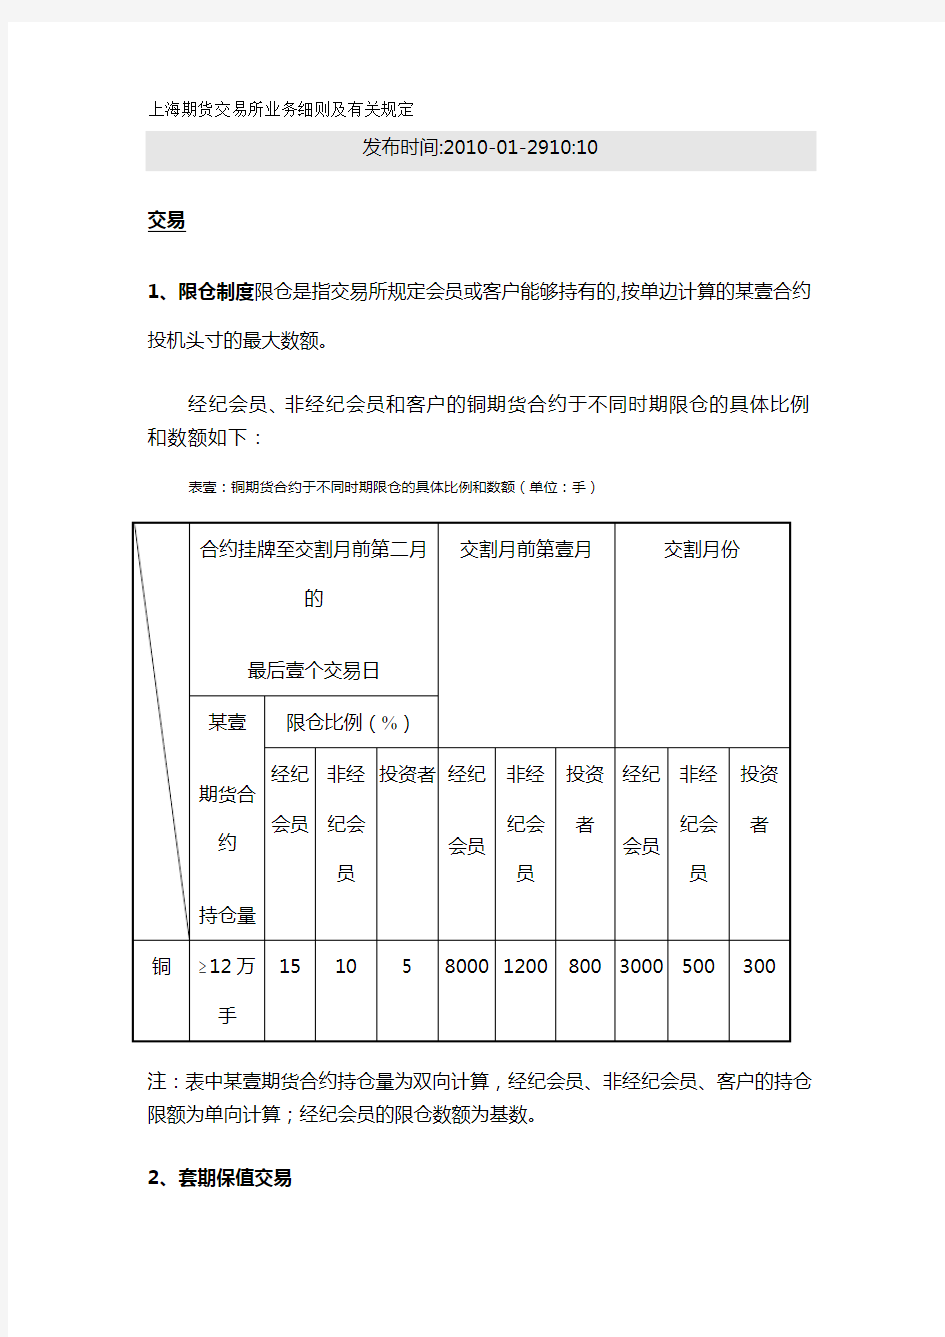 {业务管理}上海期货交易所业务细则及有关规定